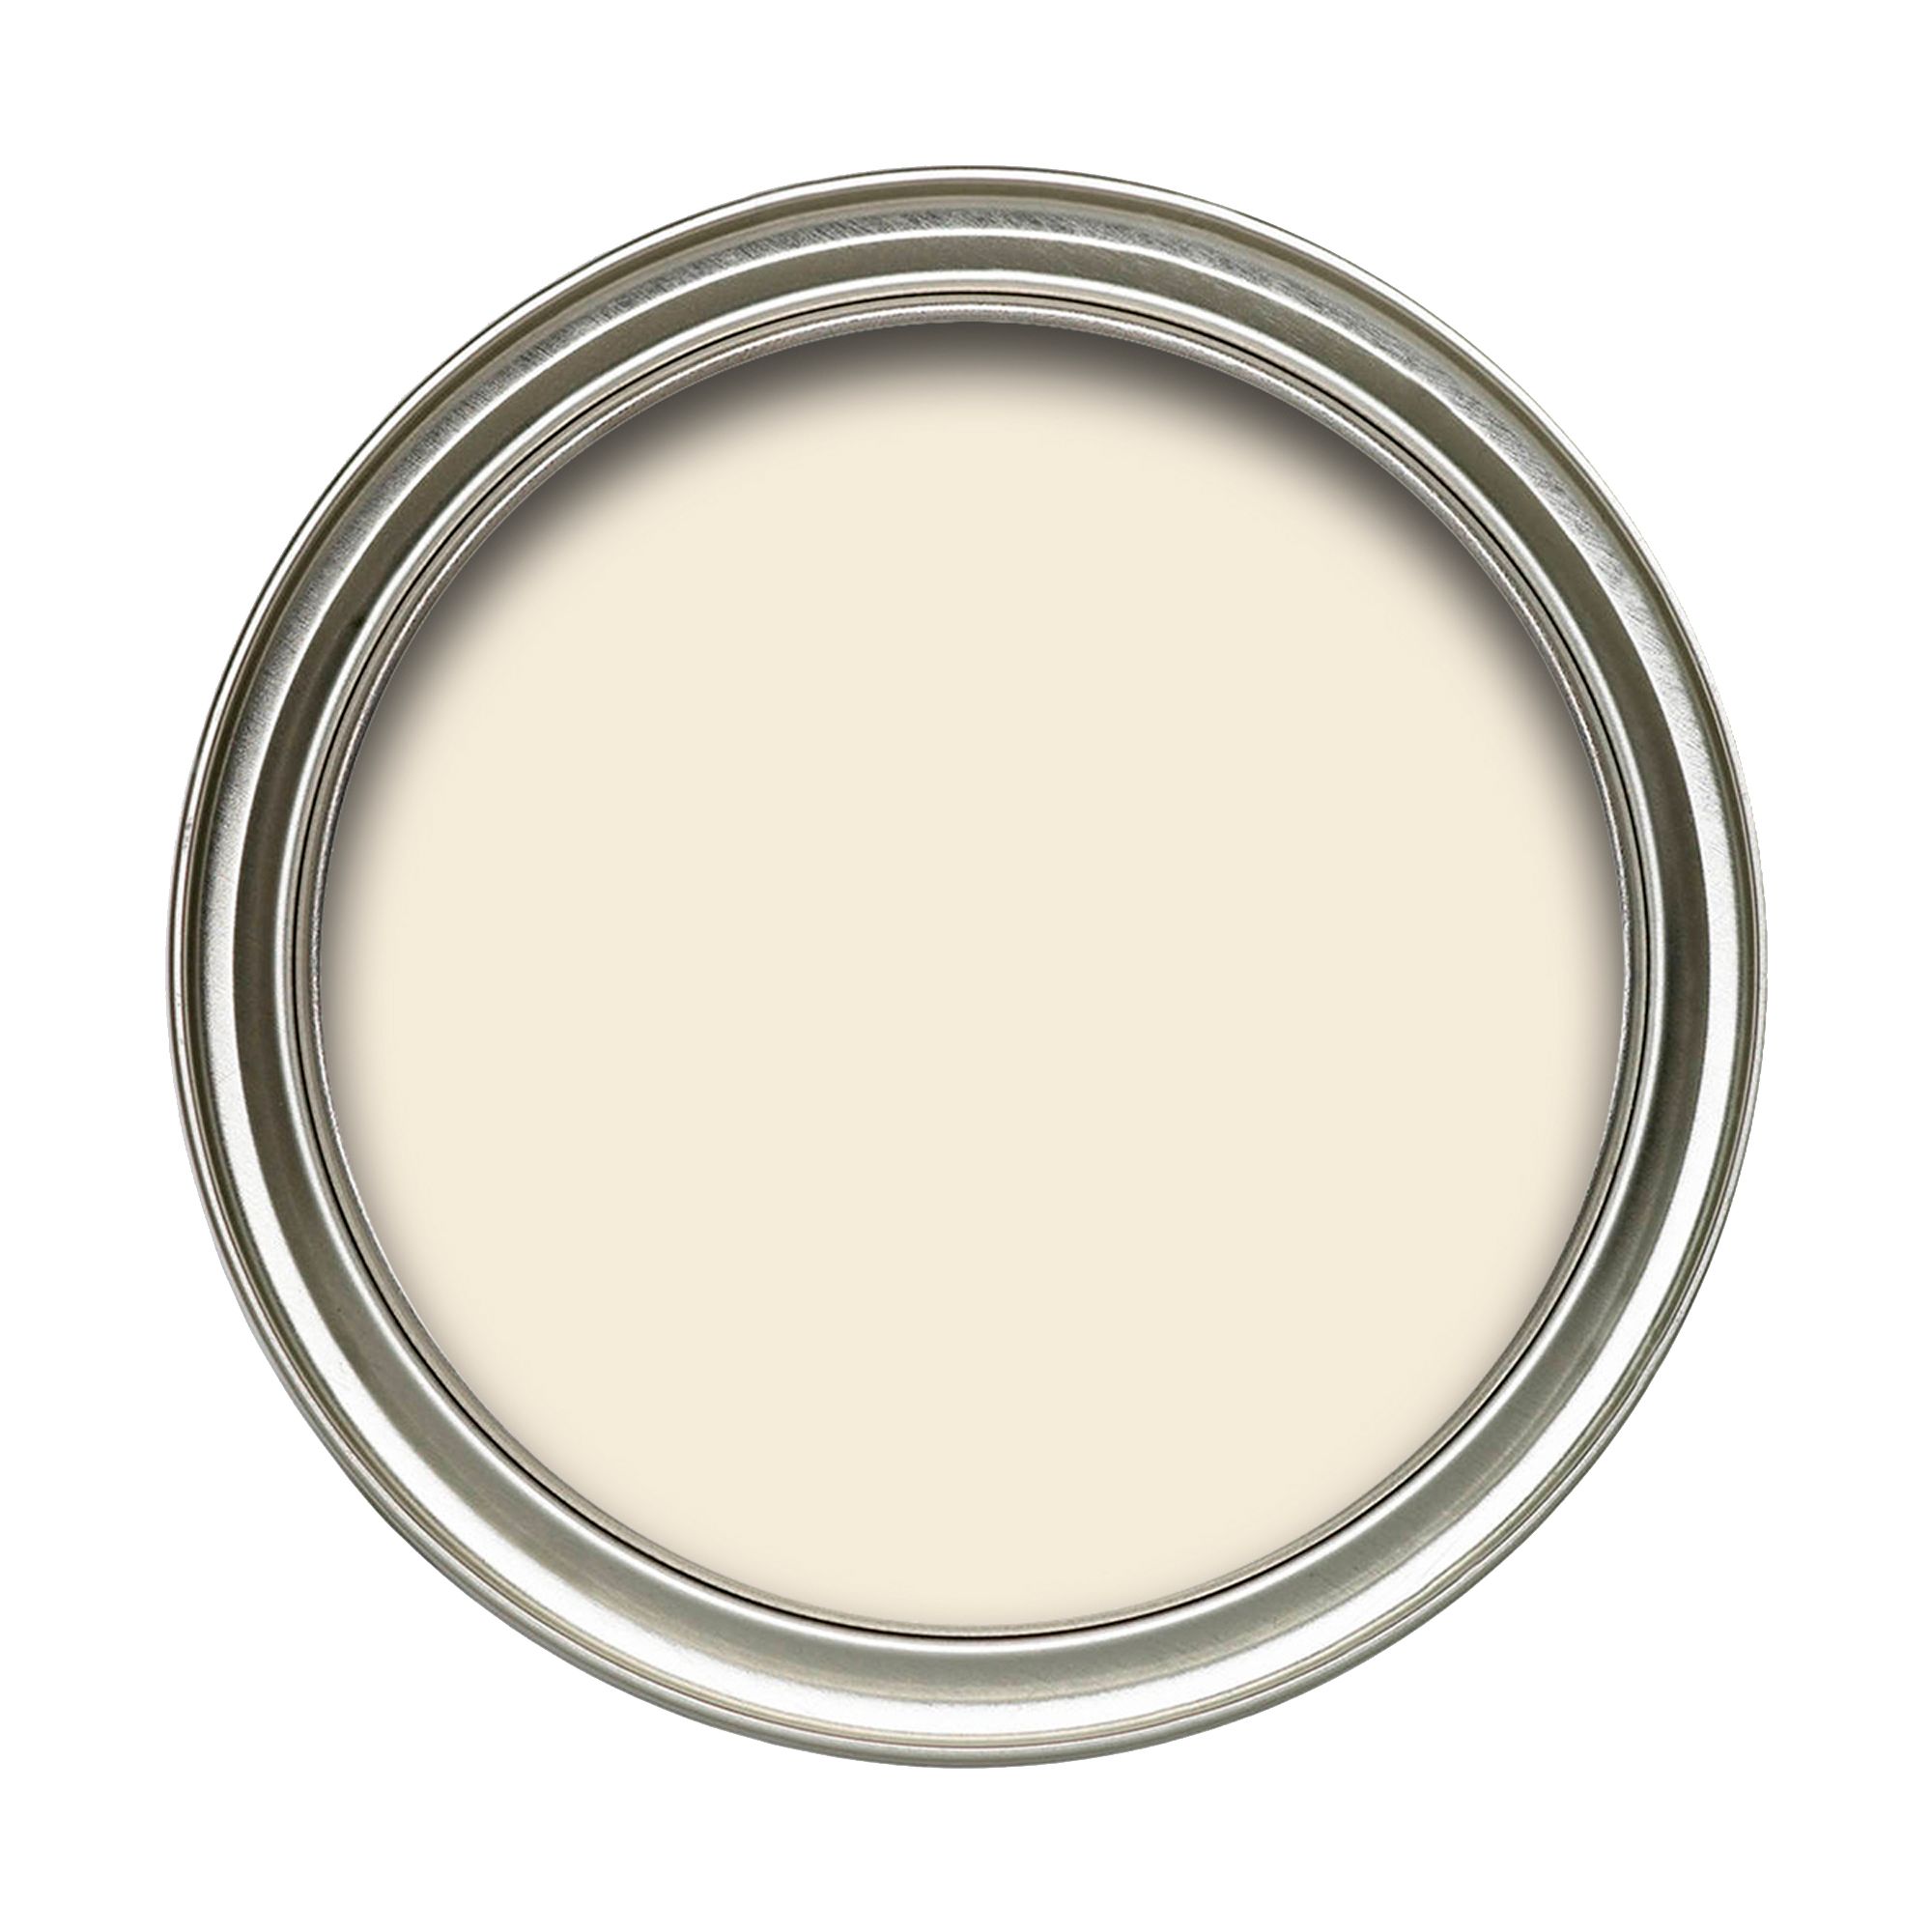 Dulux Easycare Jasmine white Vinyl matt Emulsion paint, 10L